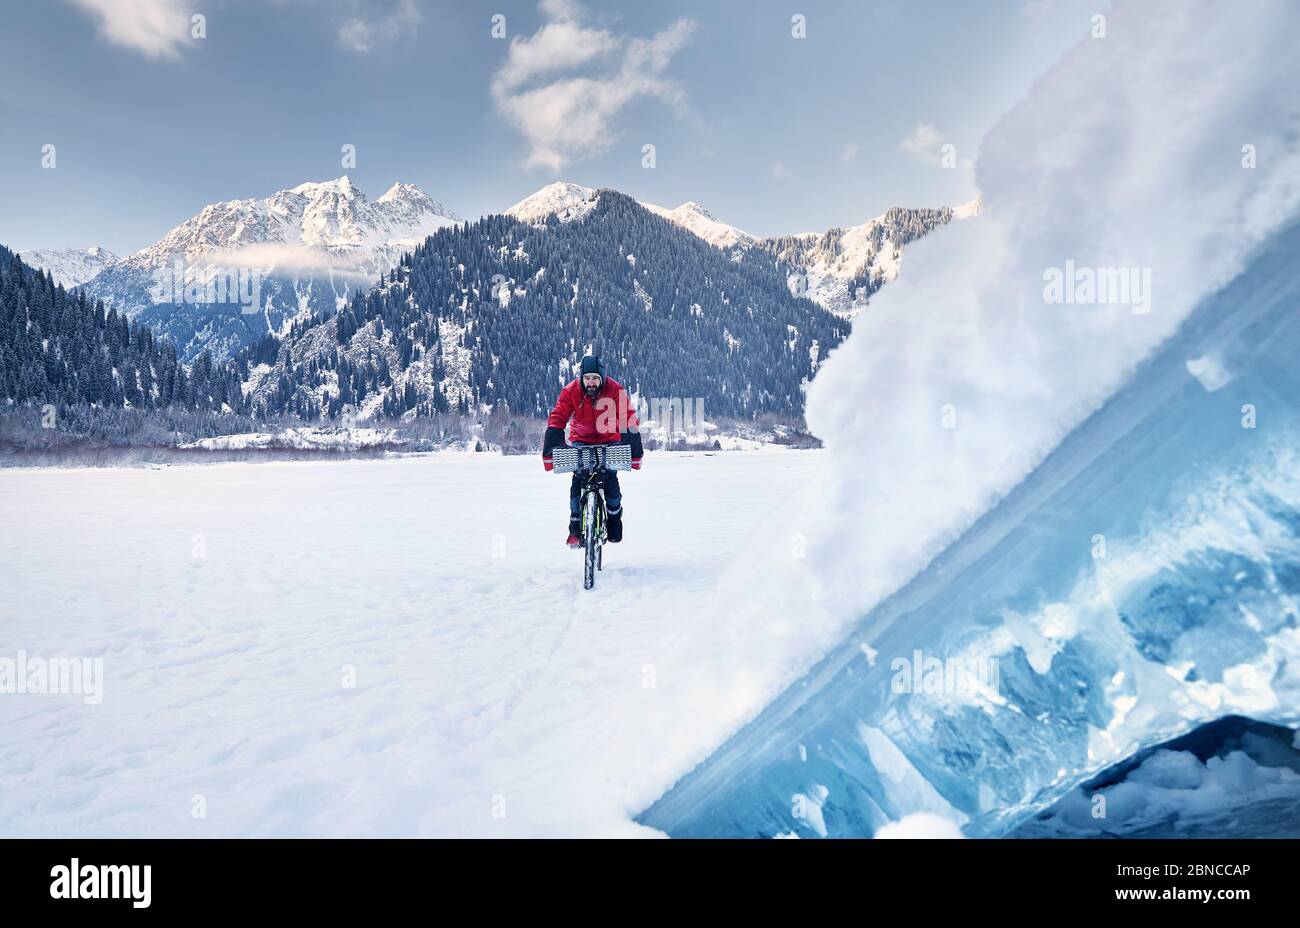 L'homme en veste rouge est à vélo sur un lac gelé avec de la glace bleue au premier plan à des montagnes enneigées en arrière-plan Banque D'Images